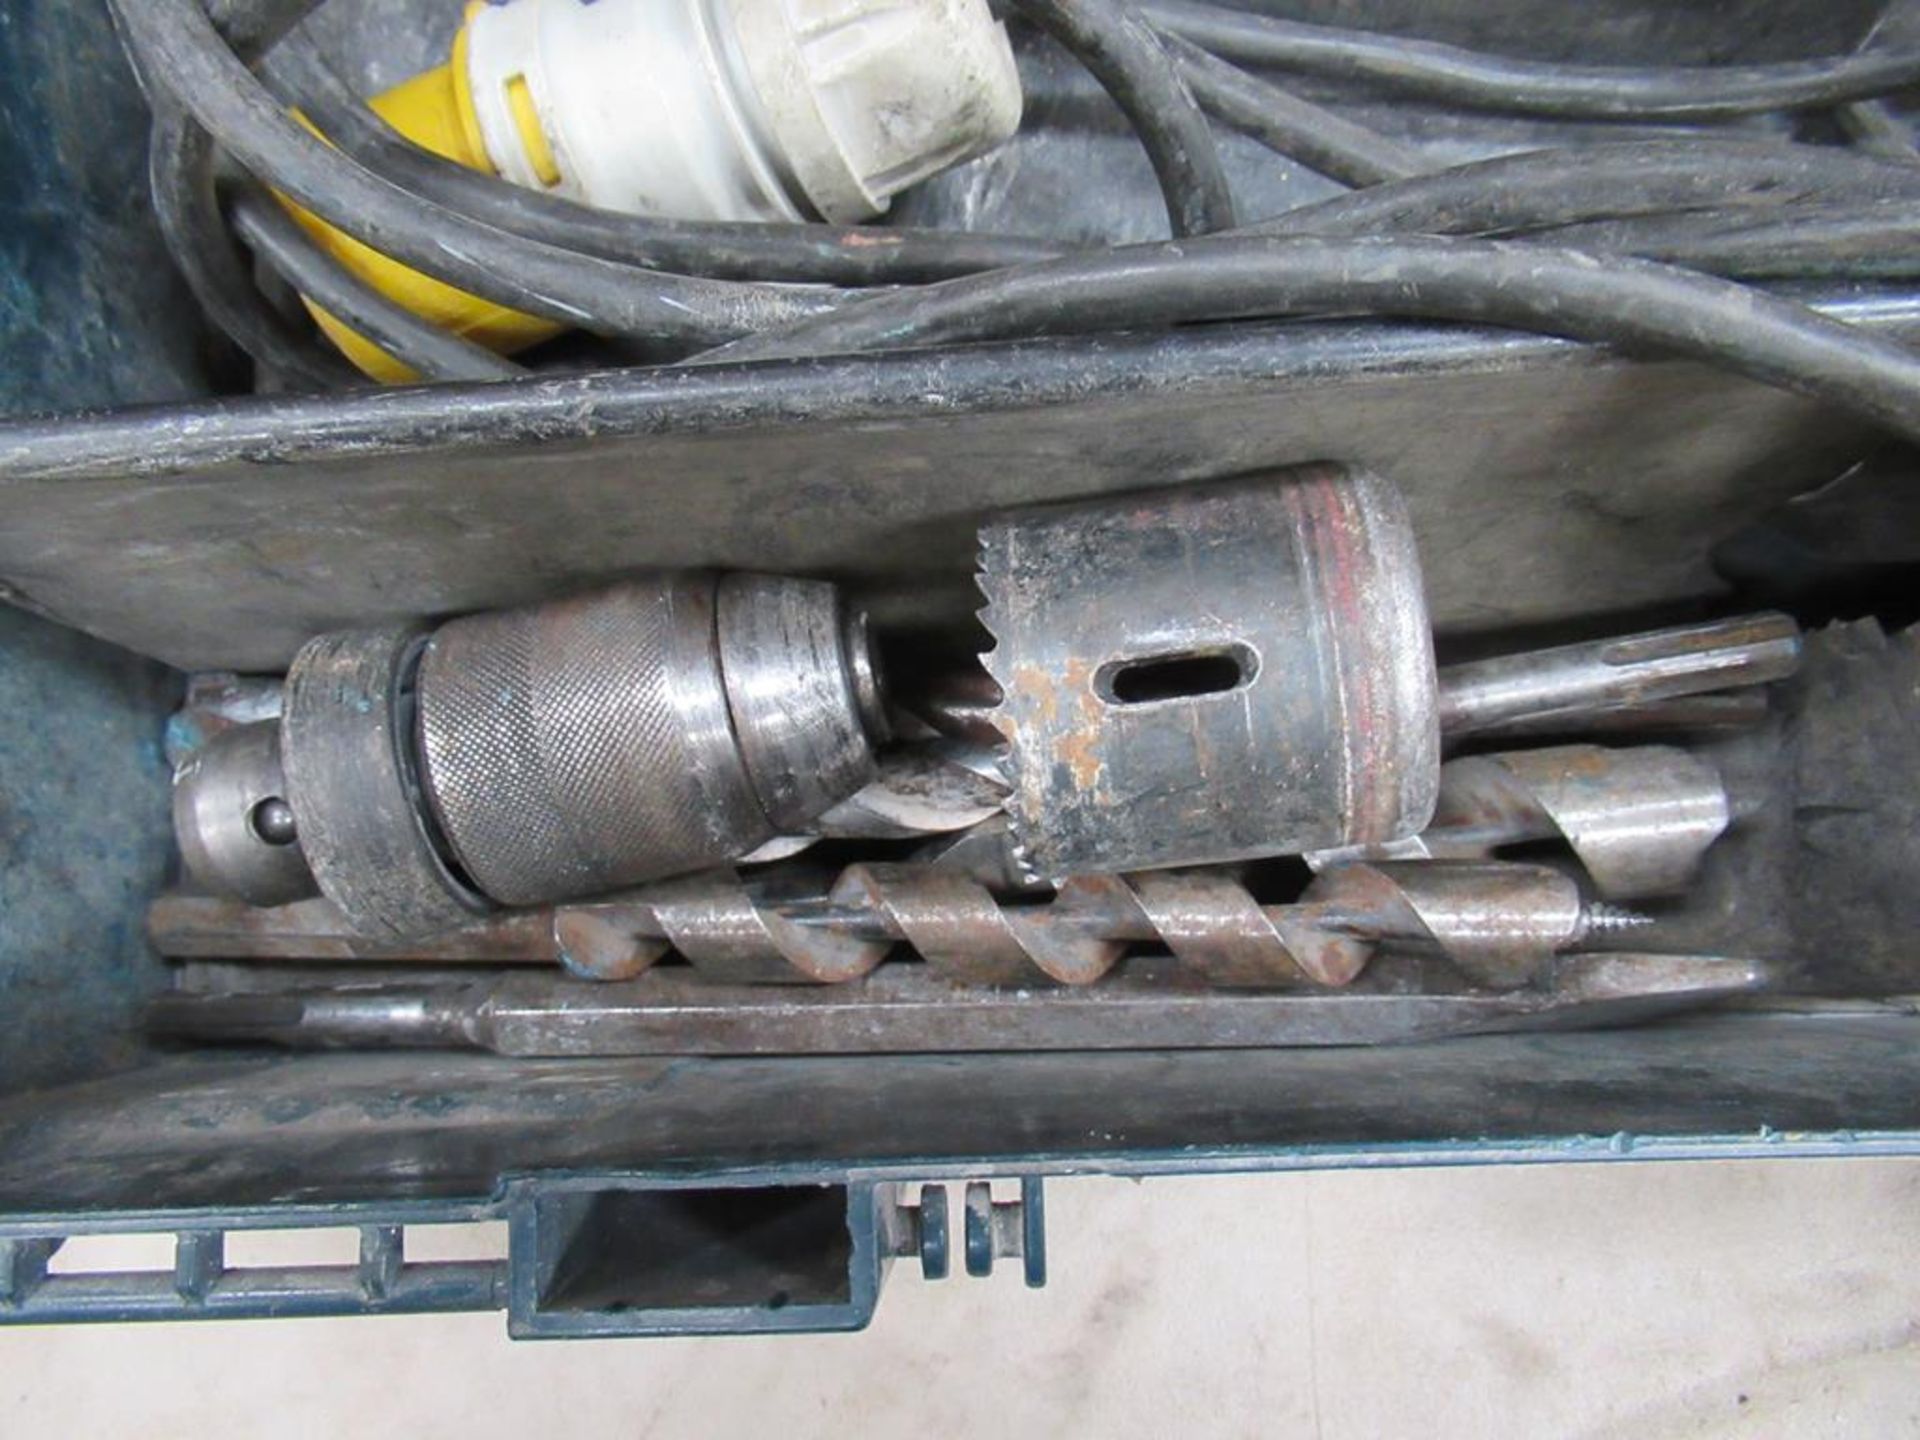 BOSCH BoschHammer Drill 110V in case - Image 3 of 3